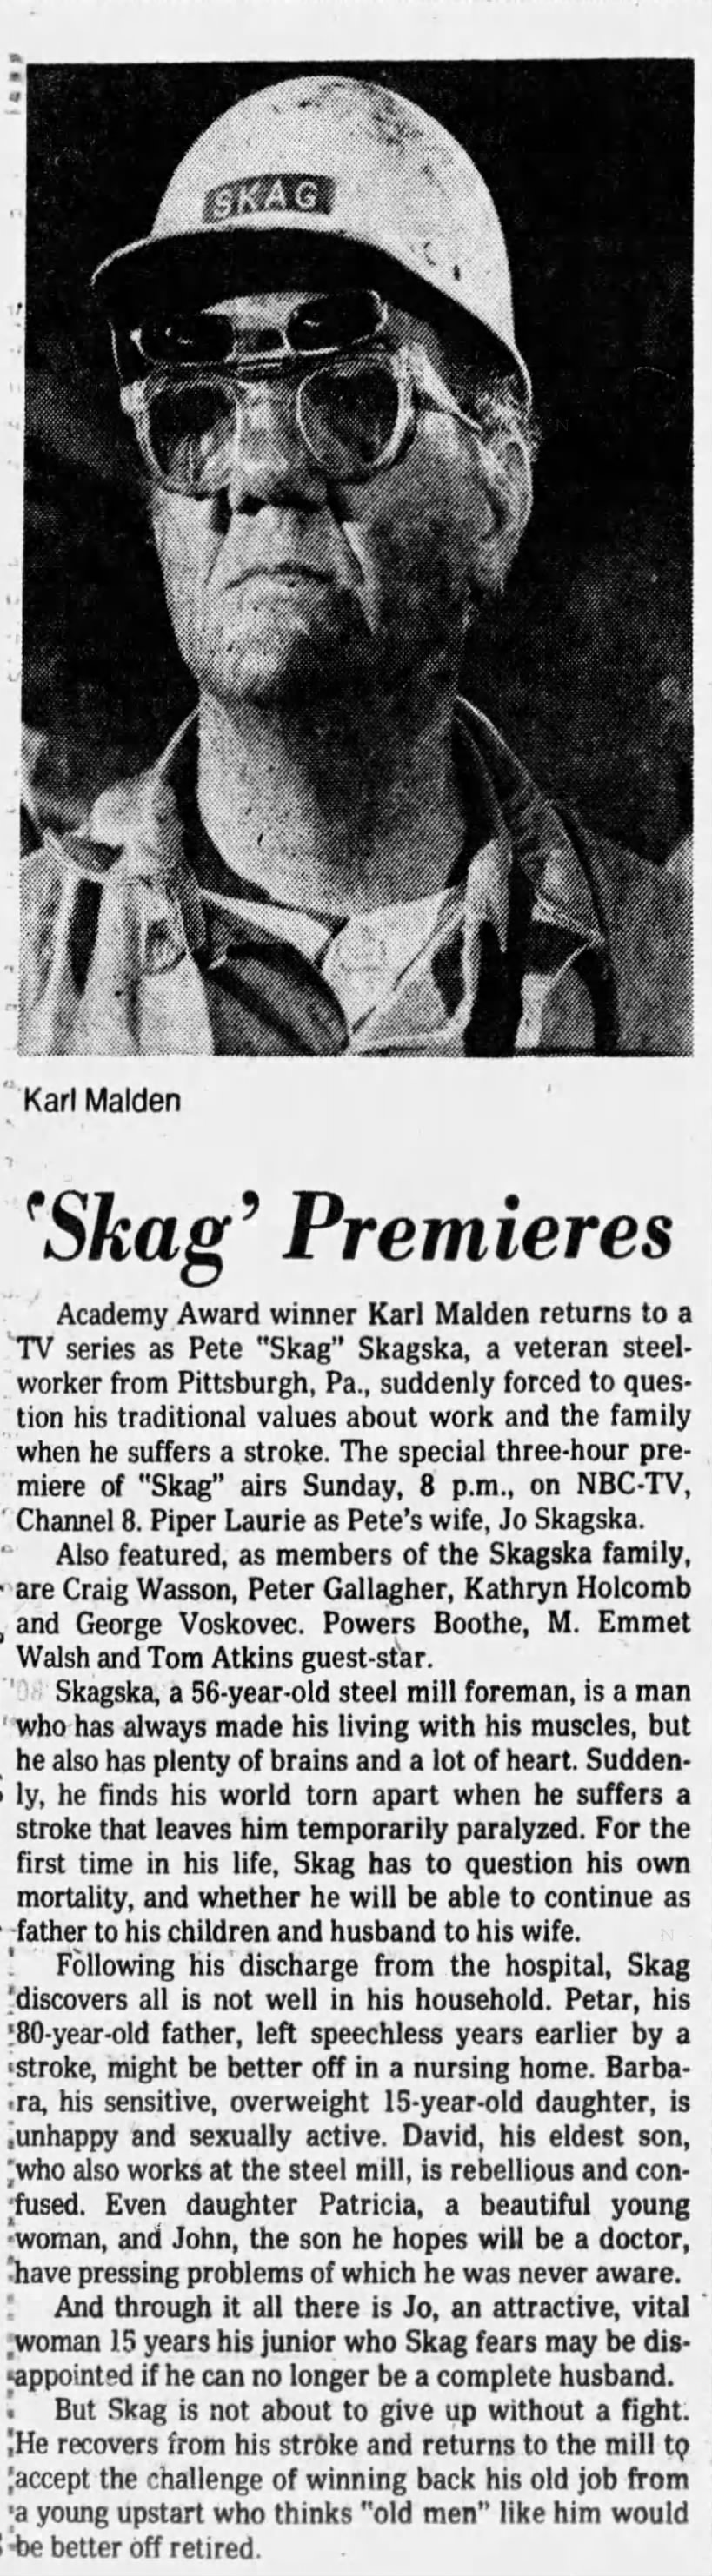 'Skag' Premieres